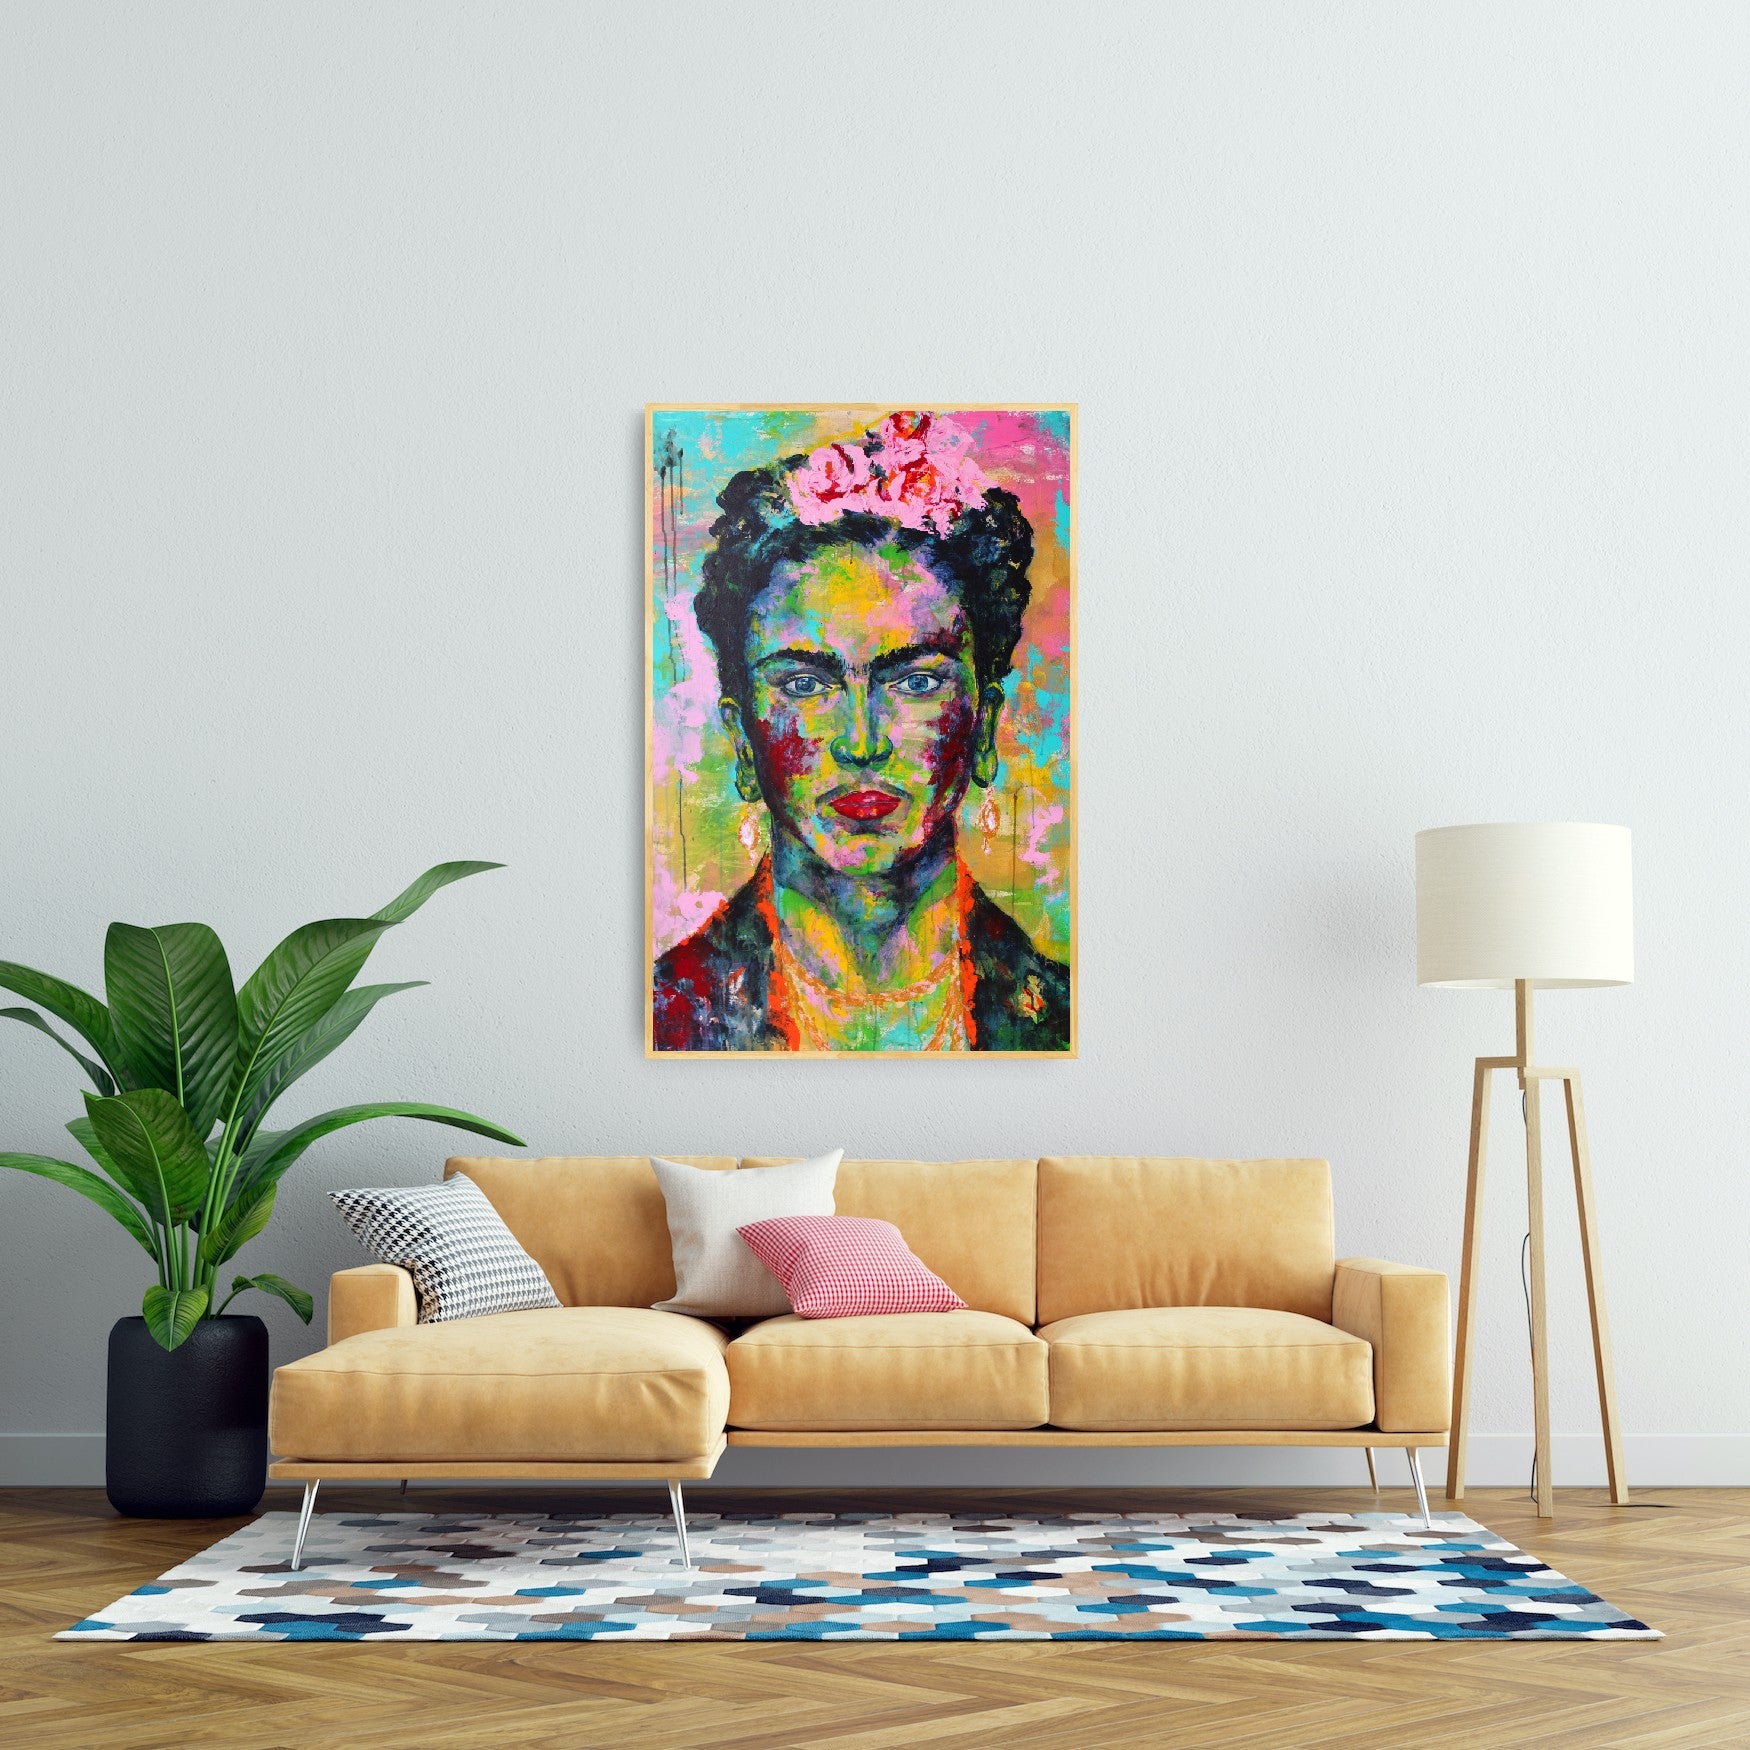 Frida Kahlo painting, 120 x 80 cm